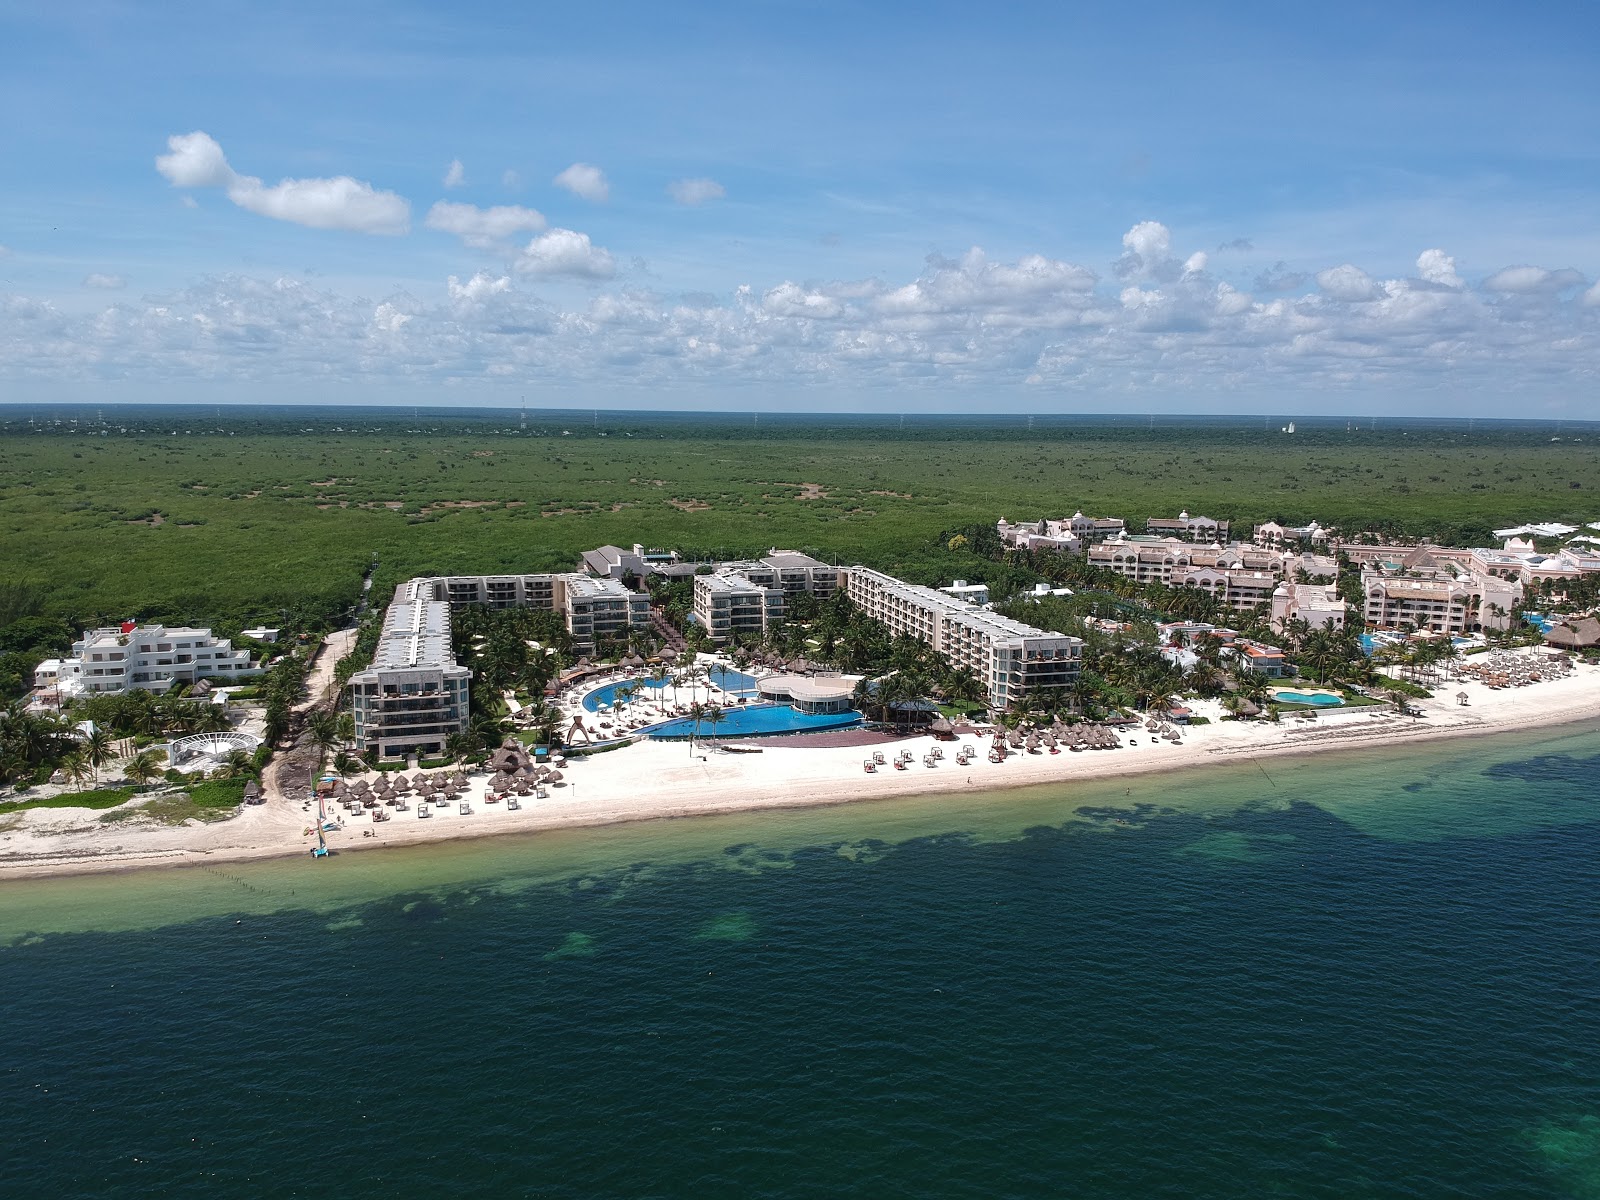 Foto av Excellence Riviera Cancun med turkos rent vatten yta